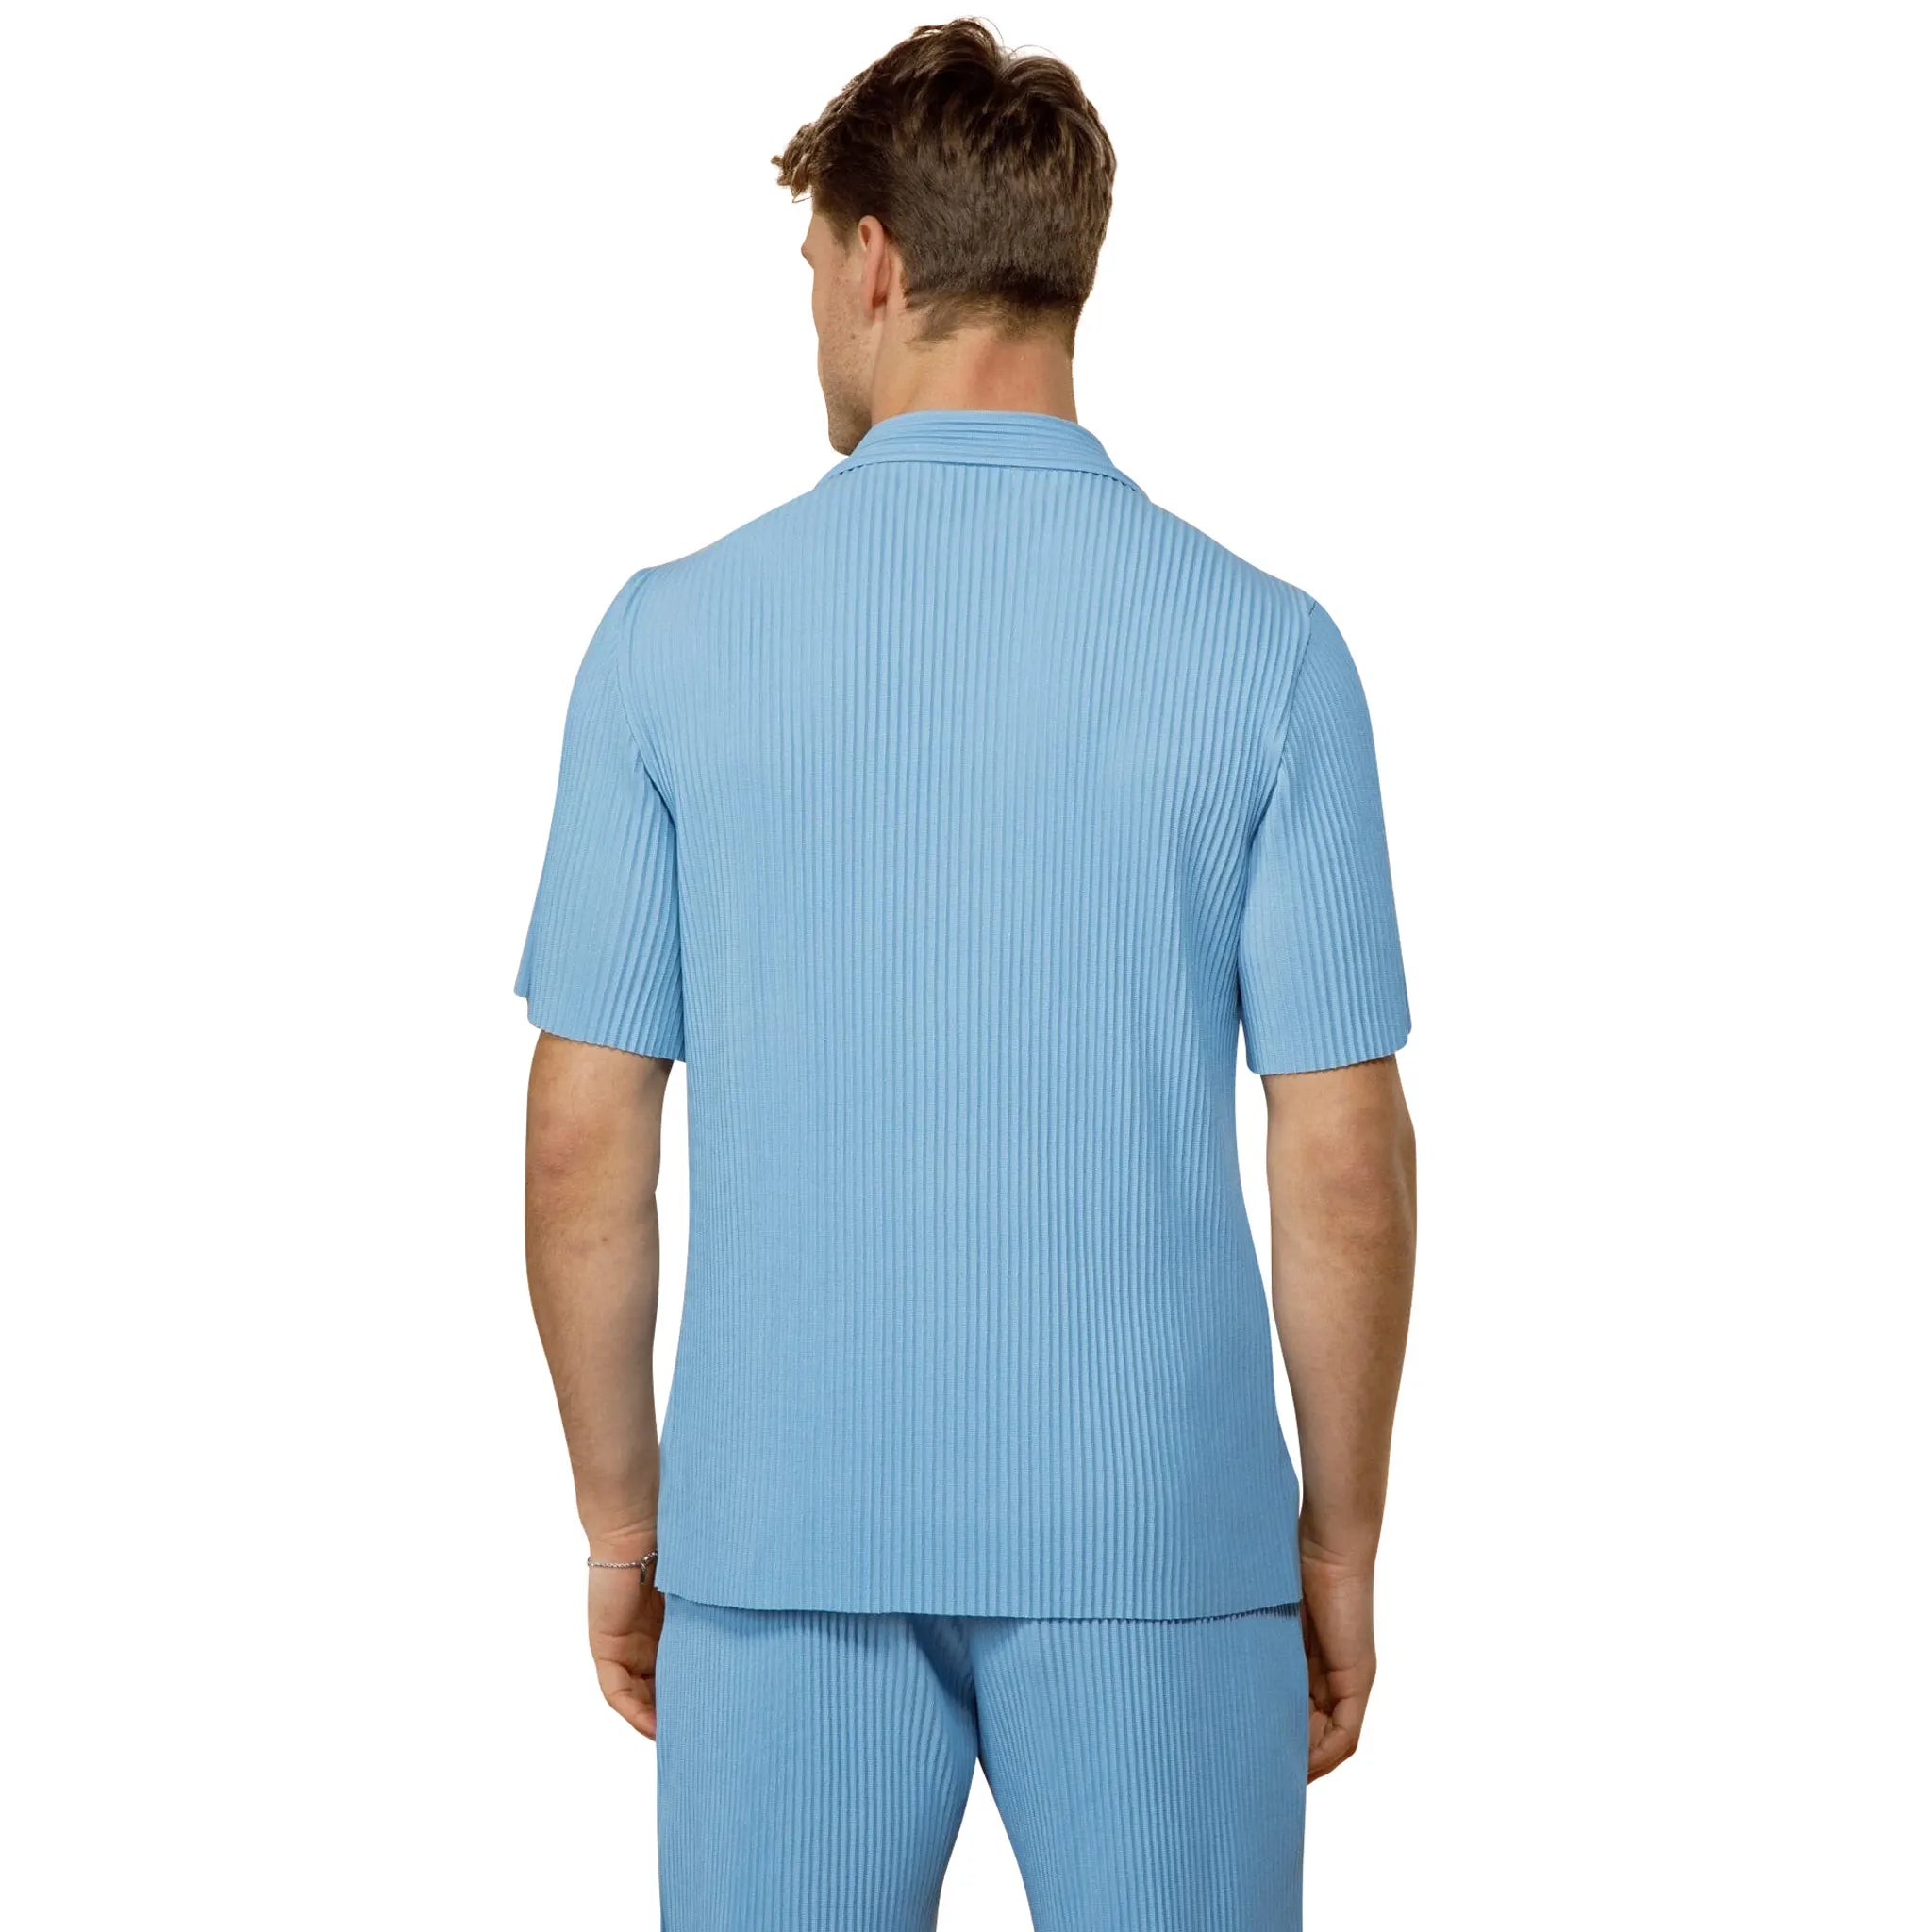 Back Detail view of Belier Pleated Short Sleeve Light Blue Resort Shirt BM-073